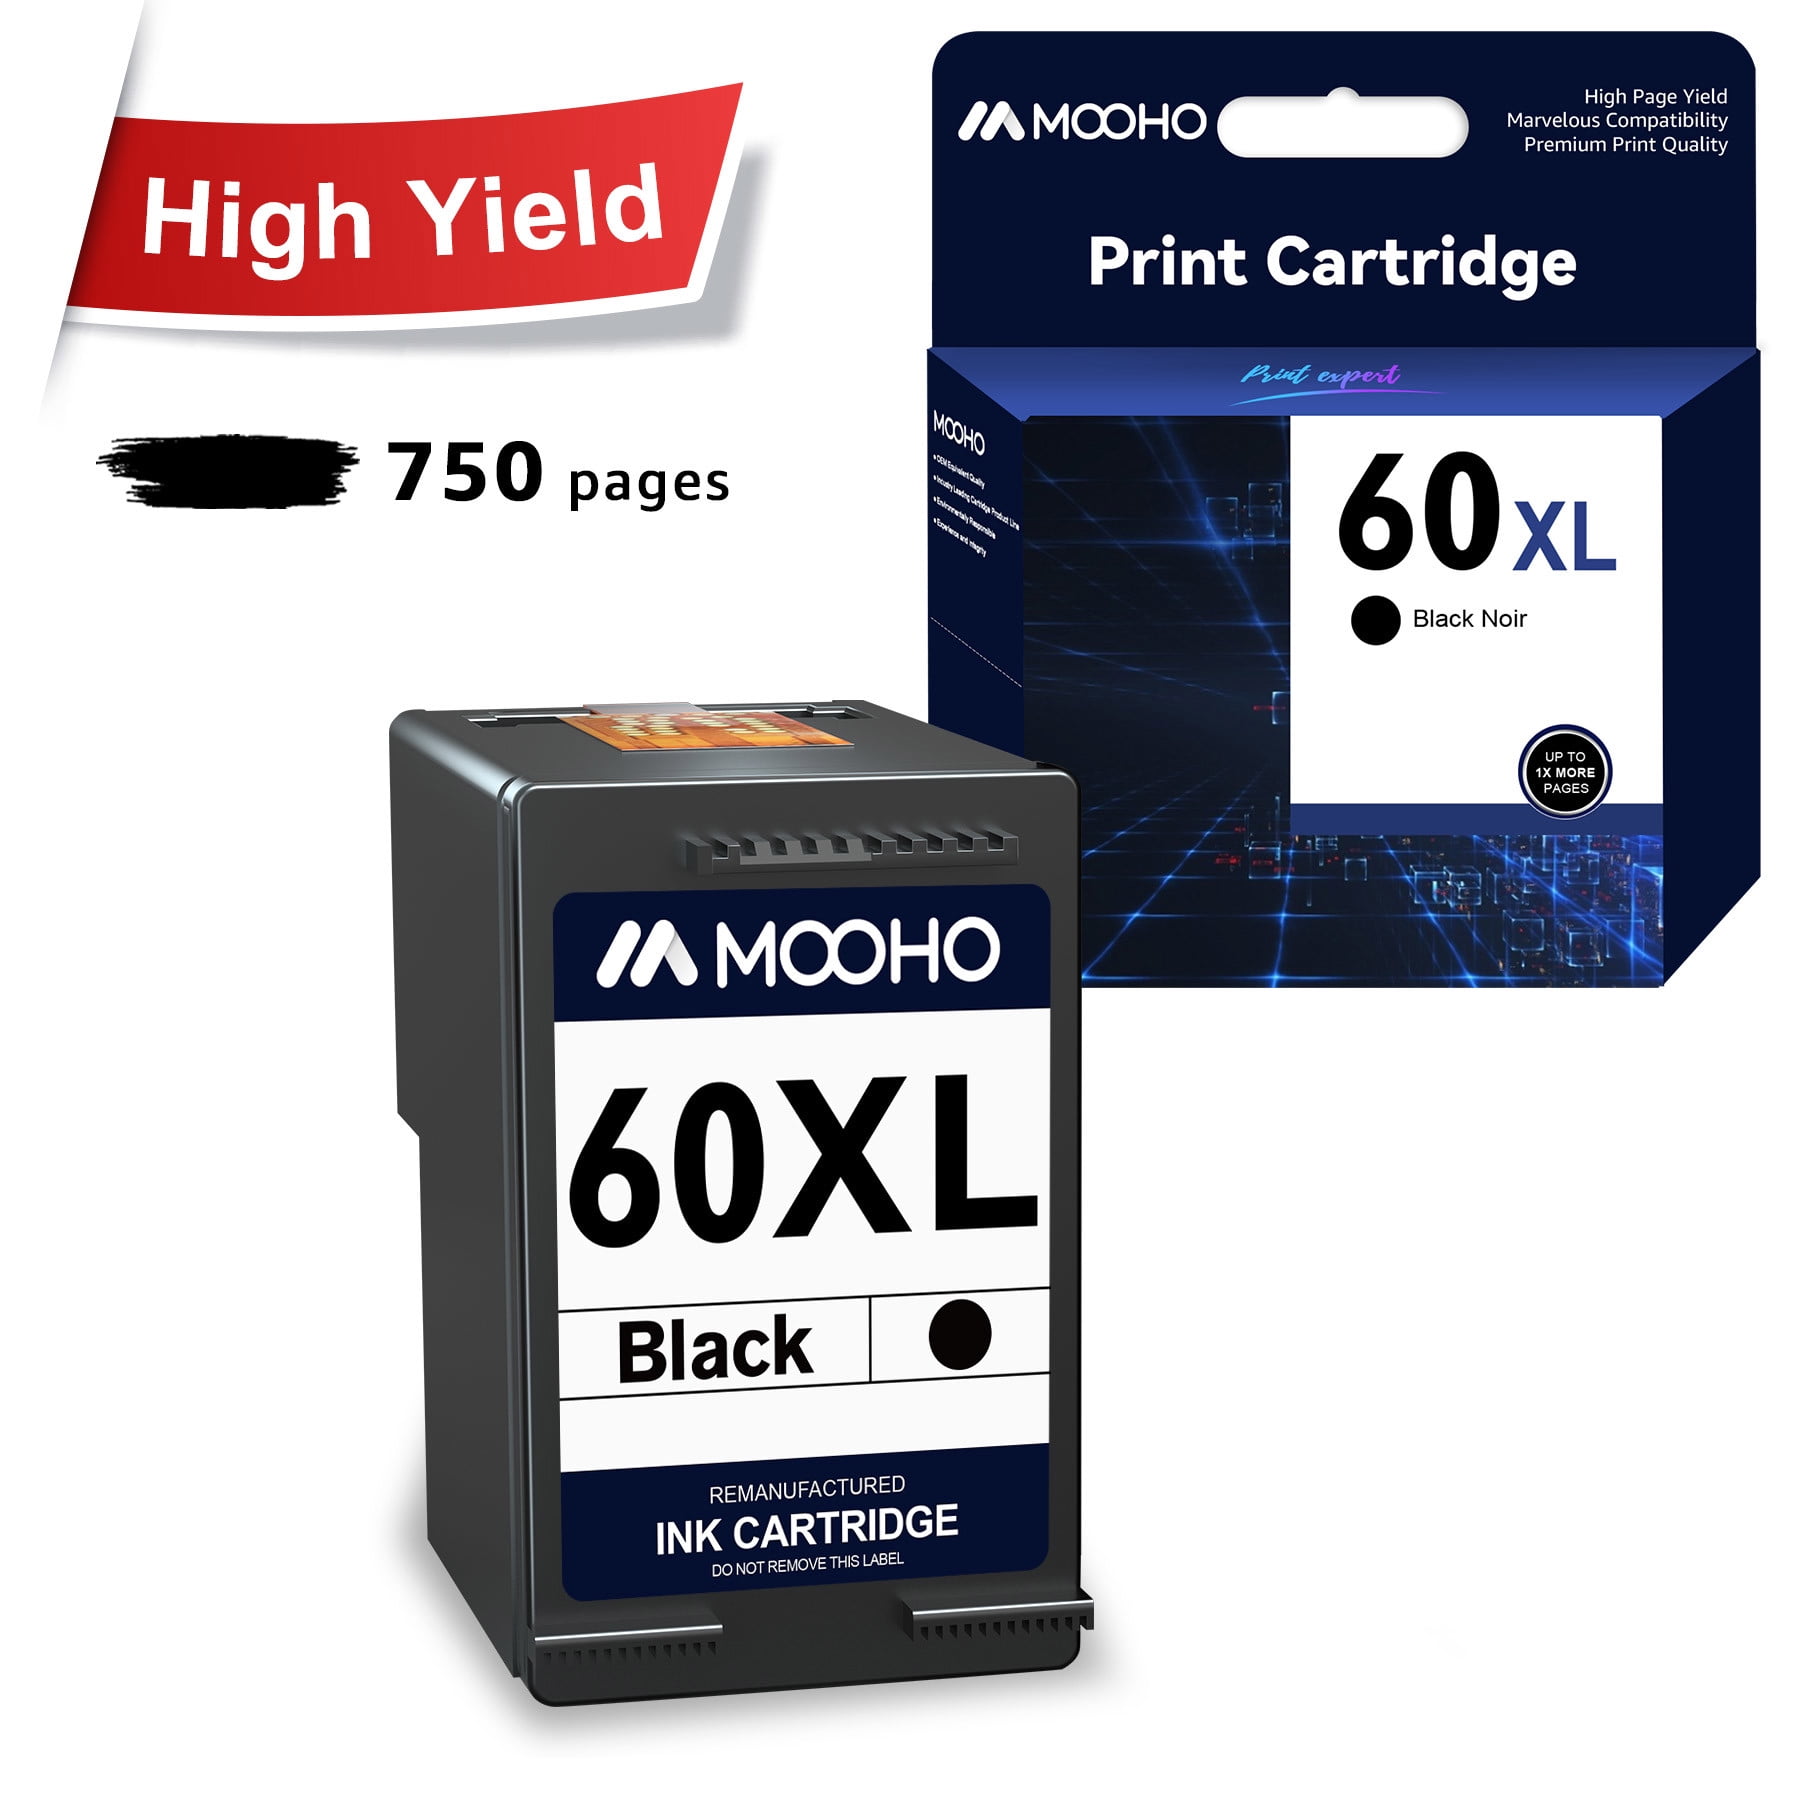 Mooho 60XL Ink Replacement for HP Printer Ink 60 Black for PhotoSmart C4780 C4680 Deskjet F4480 F4440 110 120, 1 Pack - Walmart.com